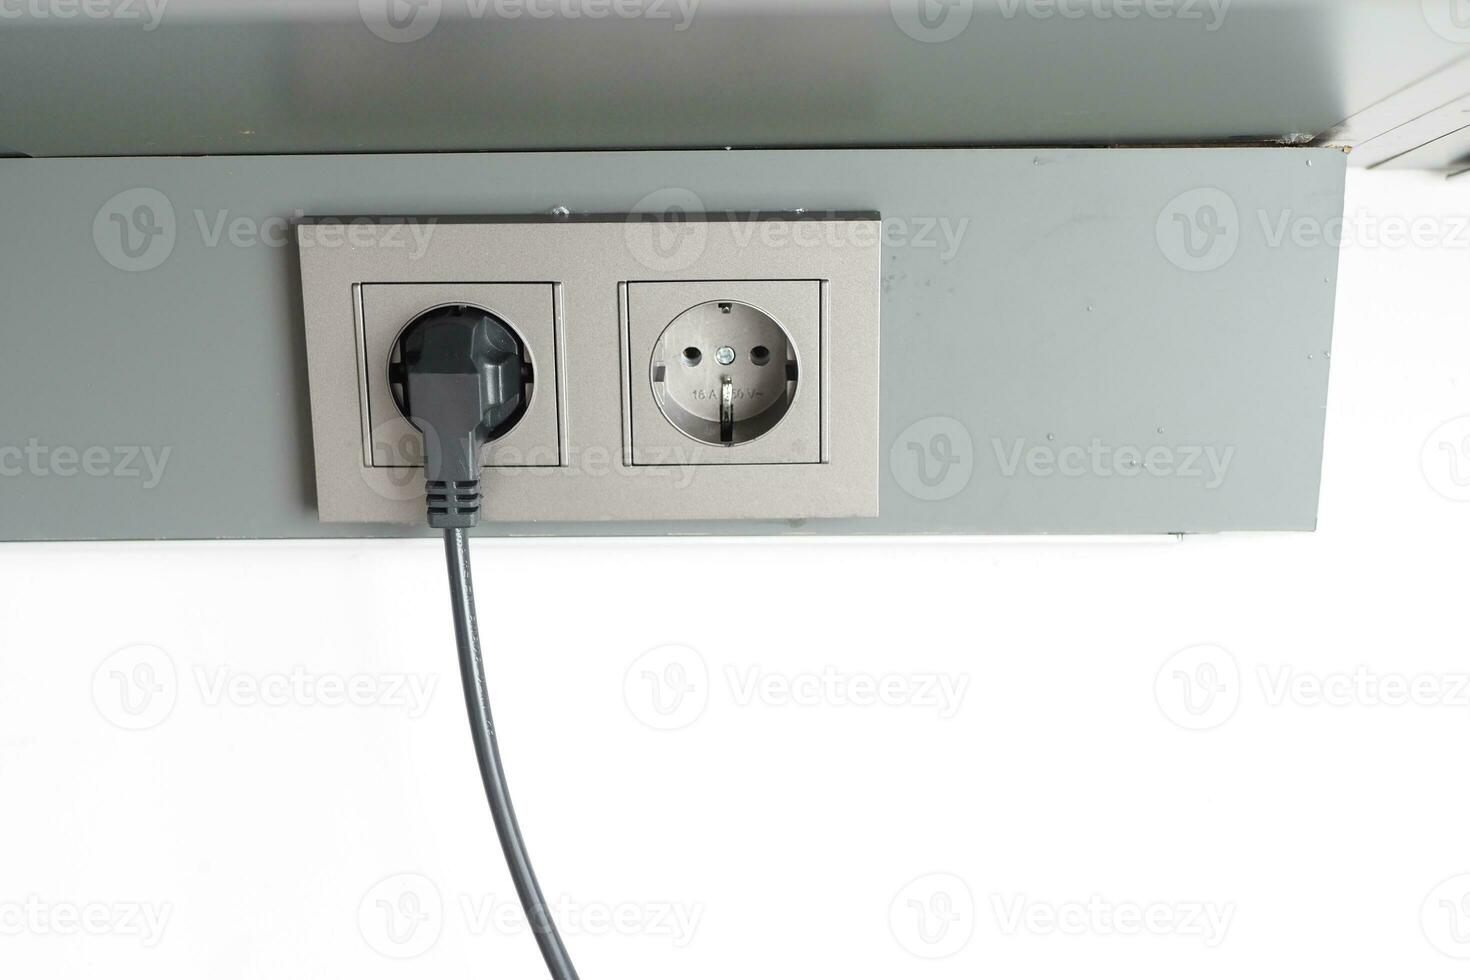 wit kleur macht koord kabel aangesloten in muur foto